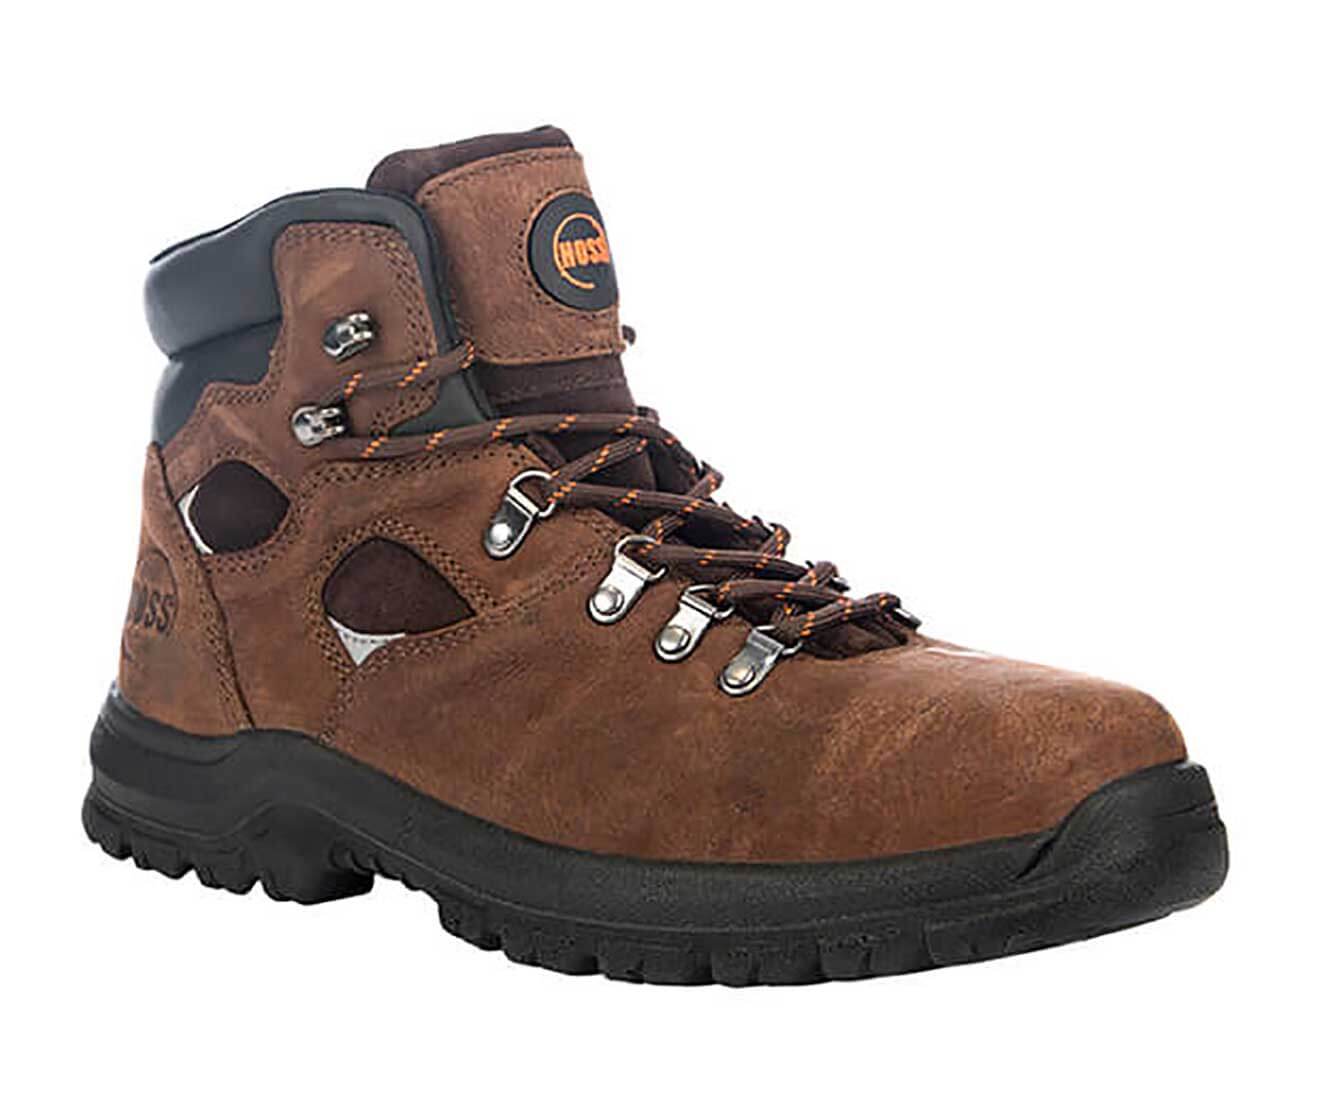 Hoss Boots Adam Brown - 60421 - Men's 6 Steel Toe Waterproof Work Hiker Boot